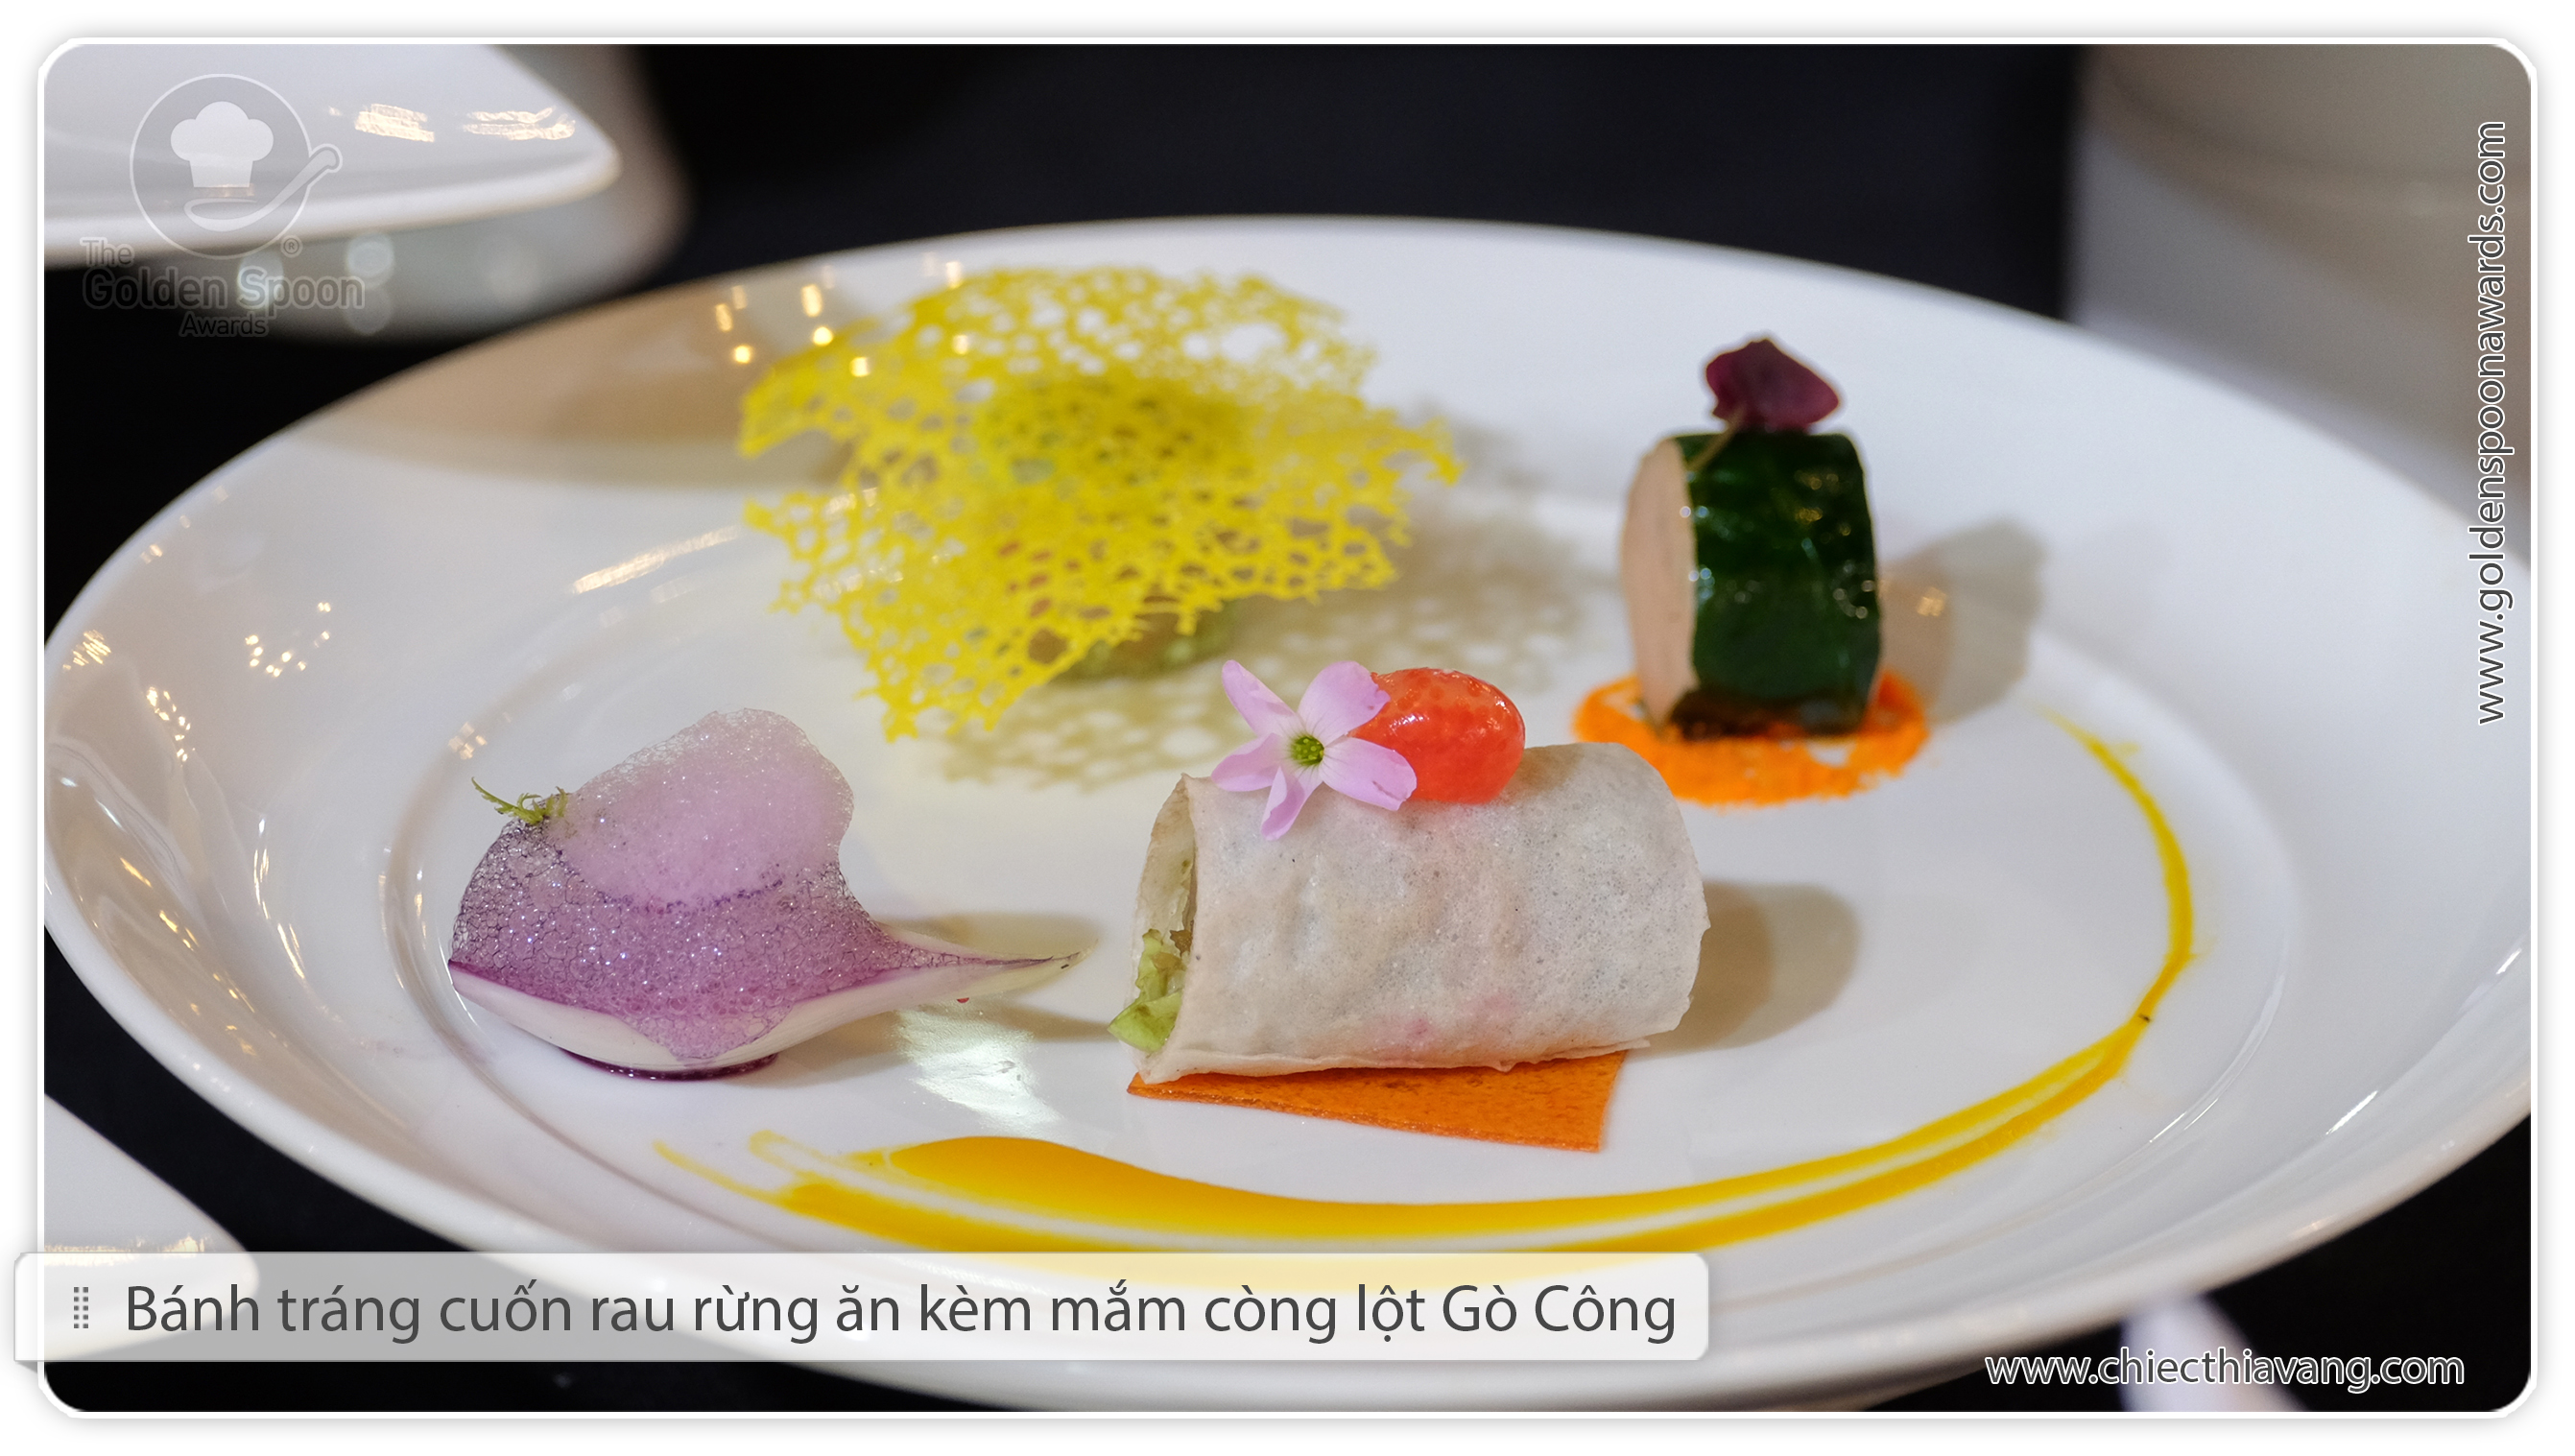 The presentation skills of Binh Quoi I Tourist Area’s chefs (semi-final round in the 2015 Golden Spoon contest)